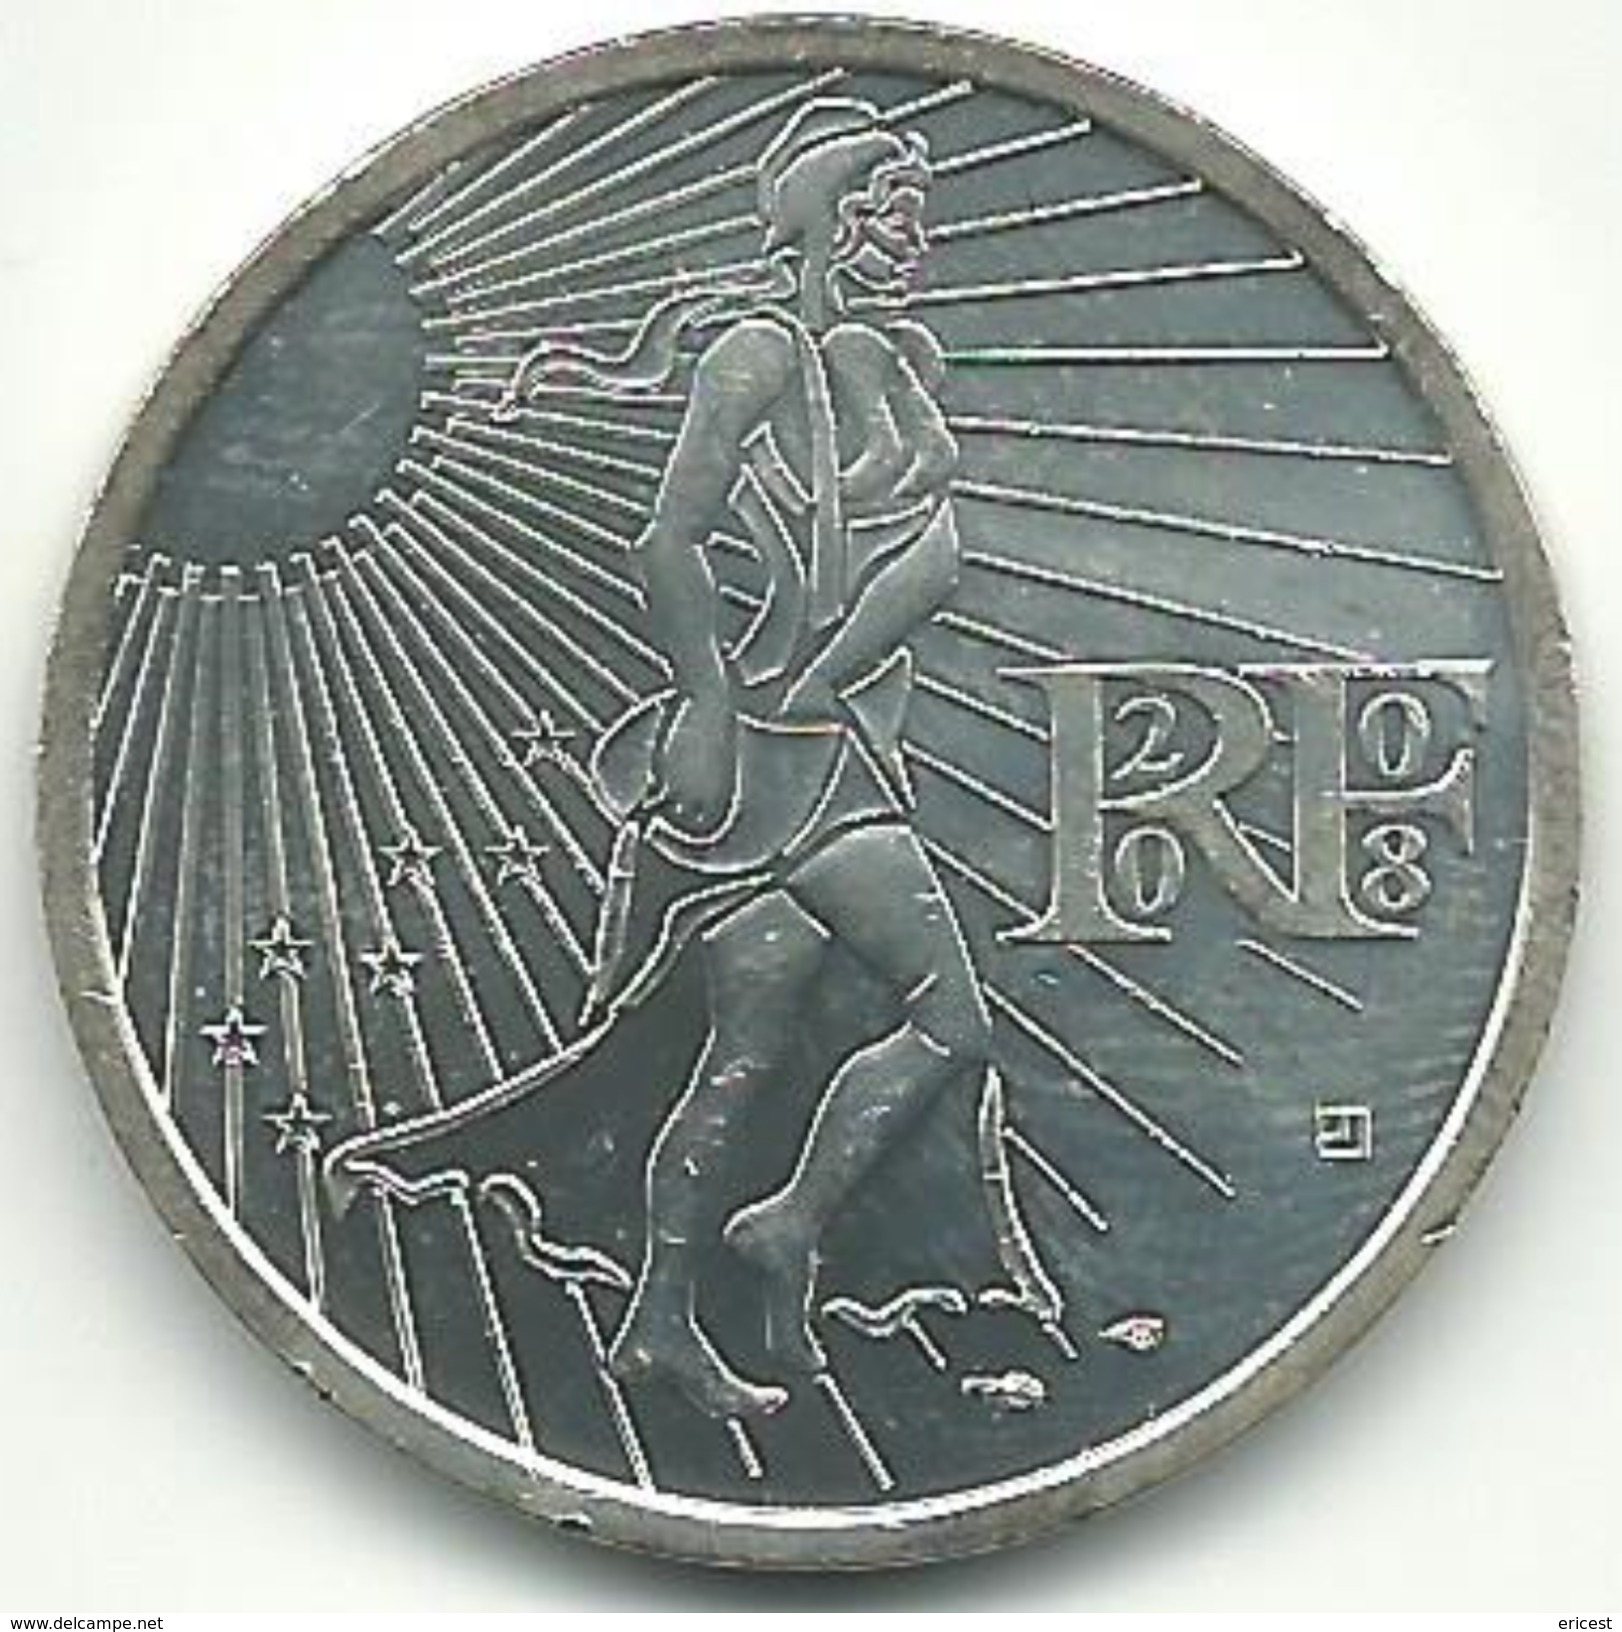 15 EUROS ARGENT 2008 - France